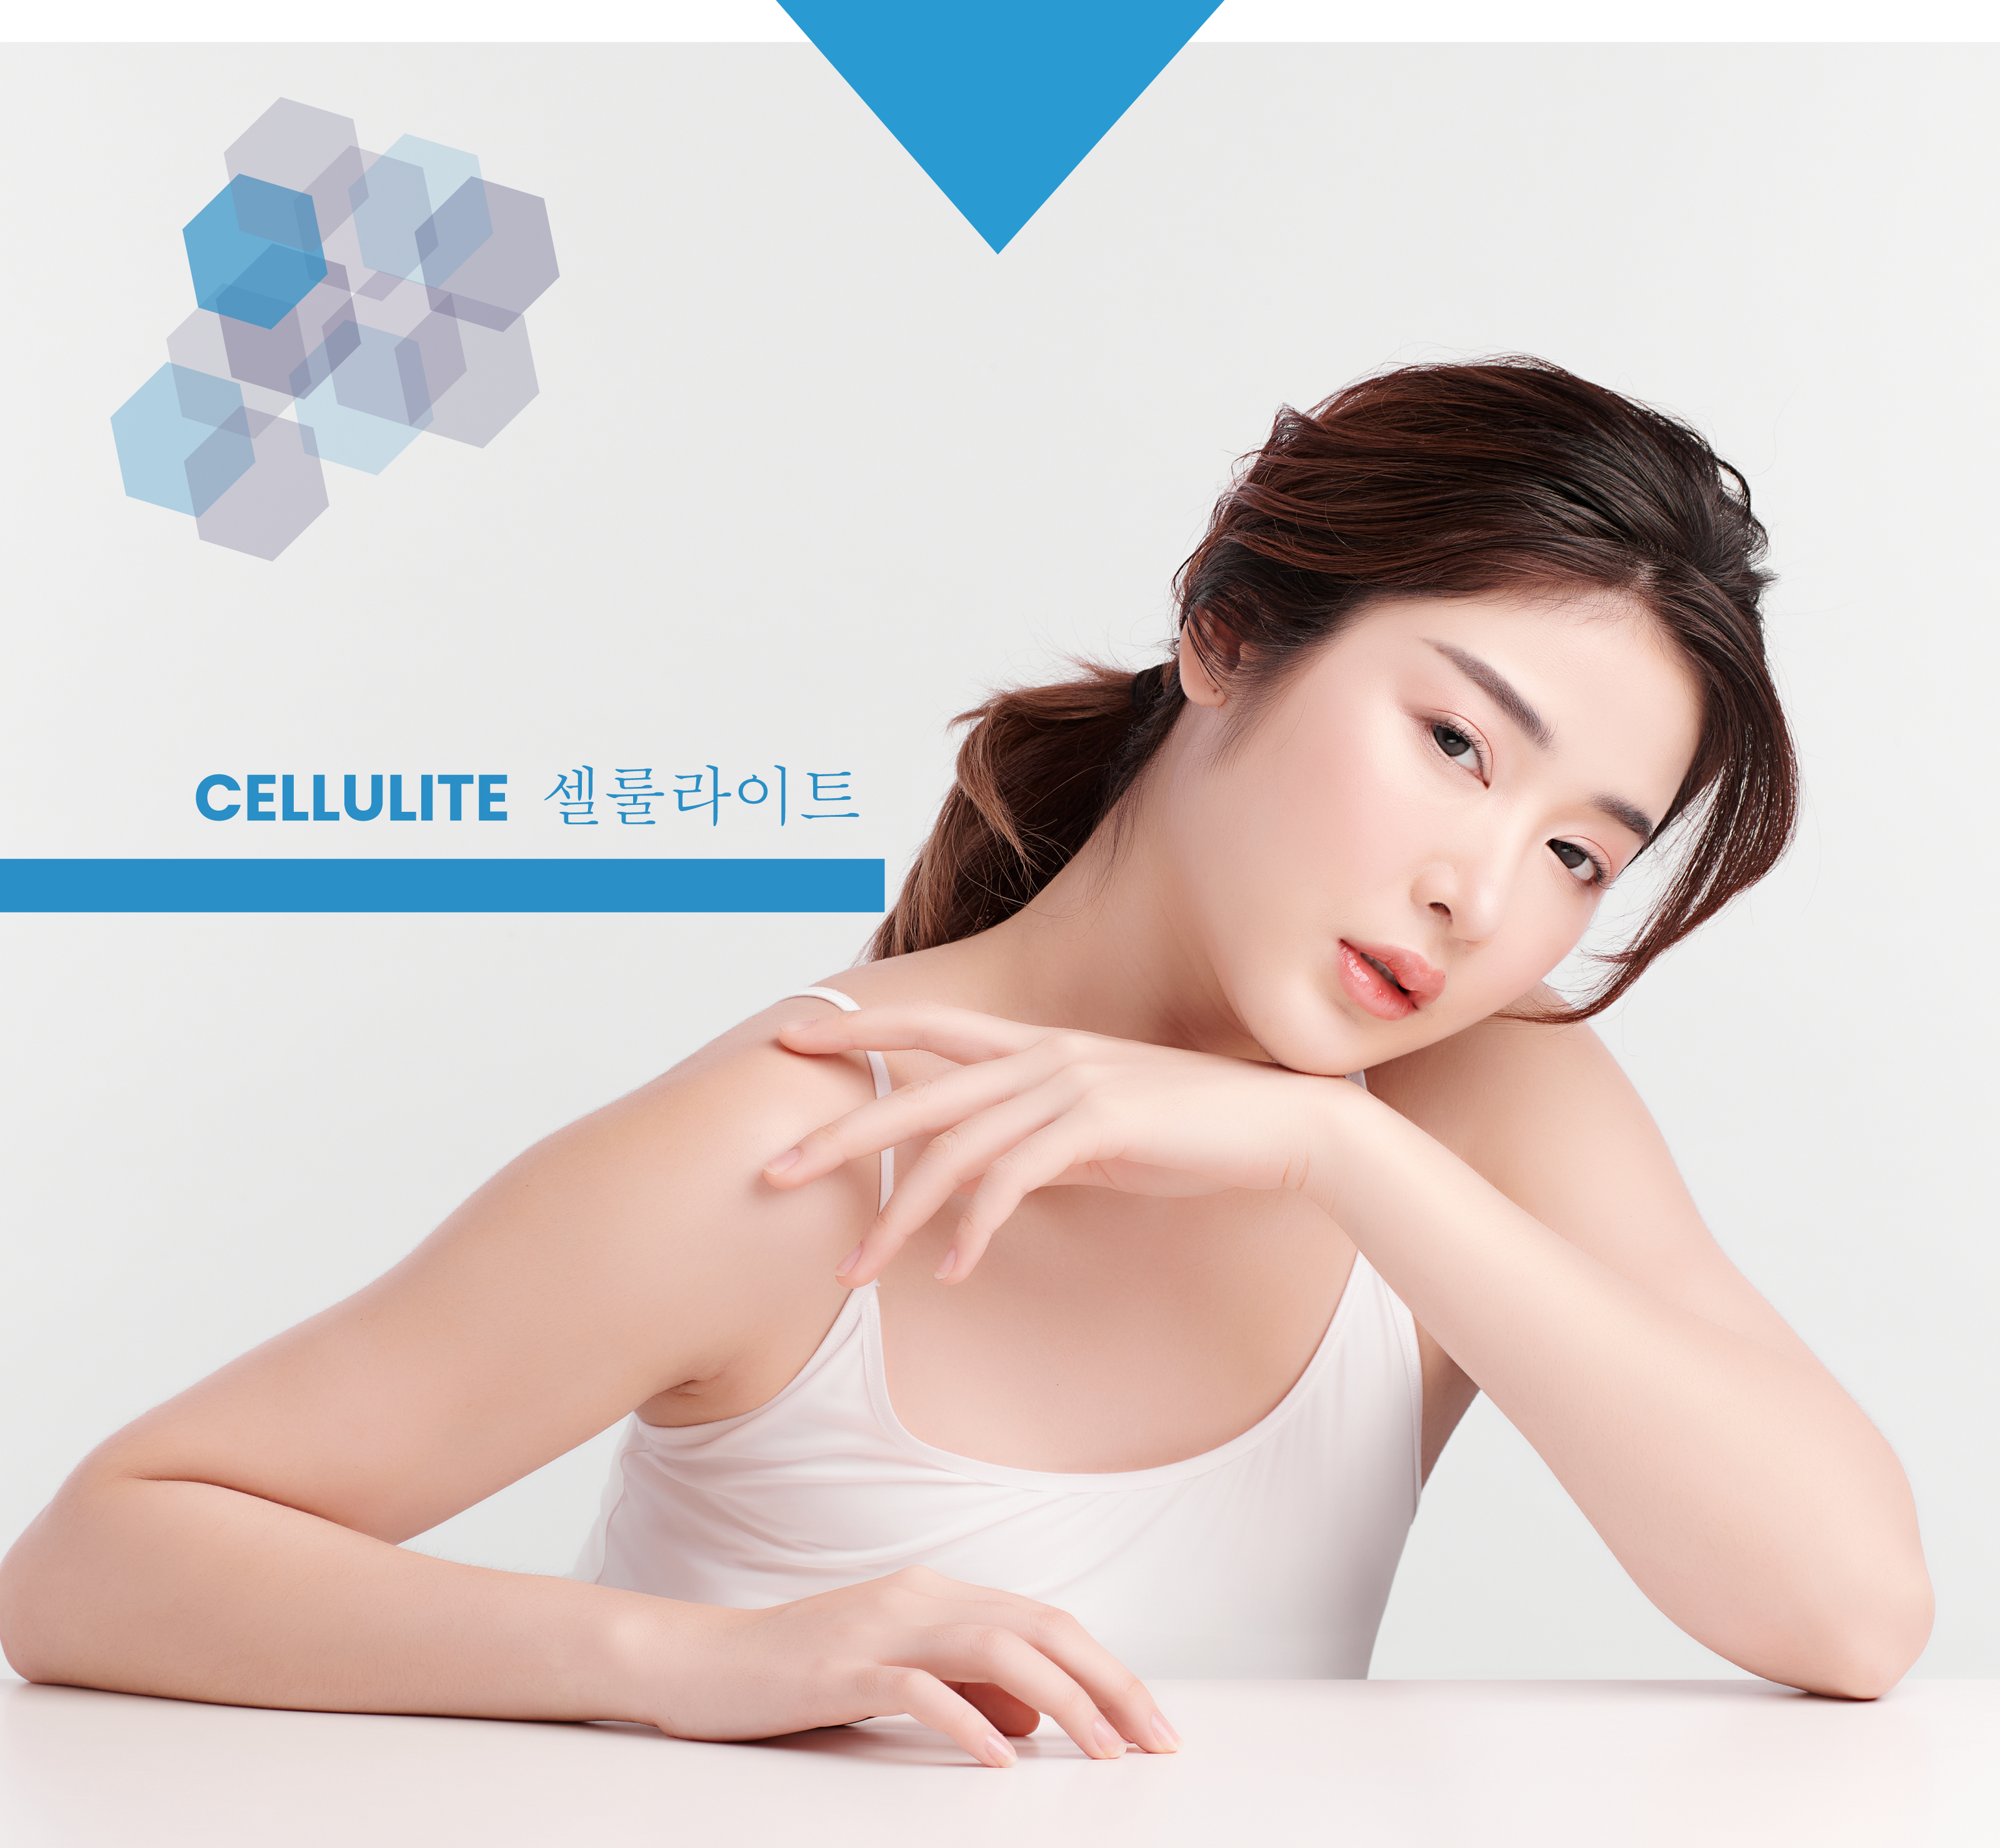 Cellulite image